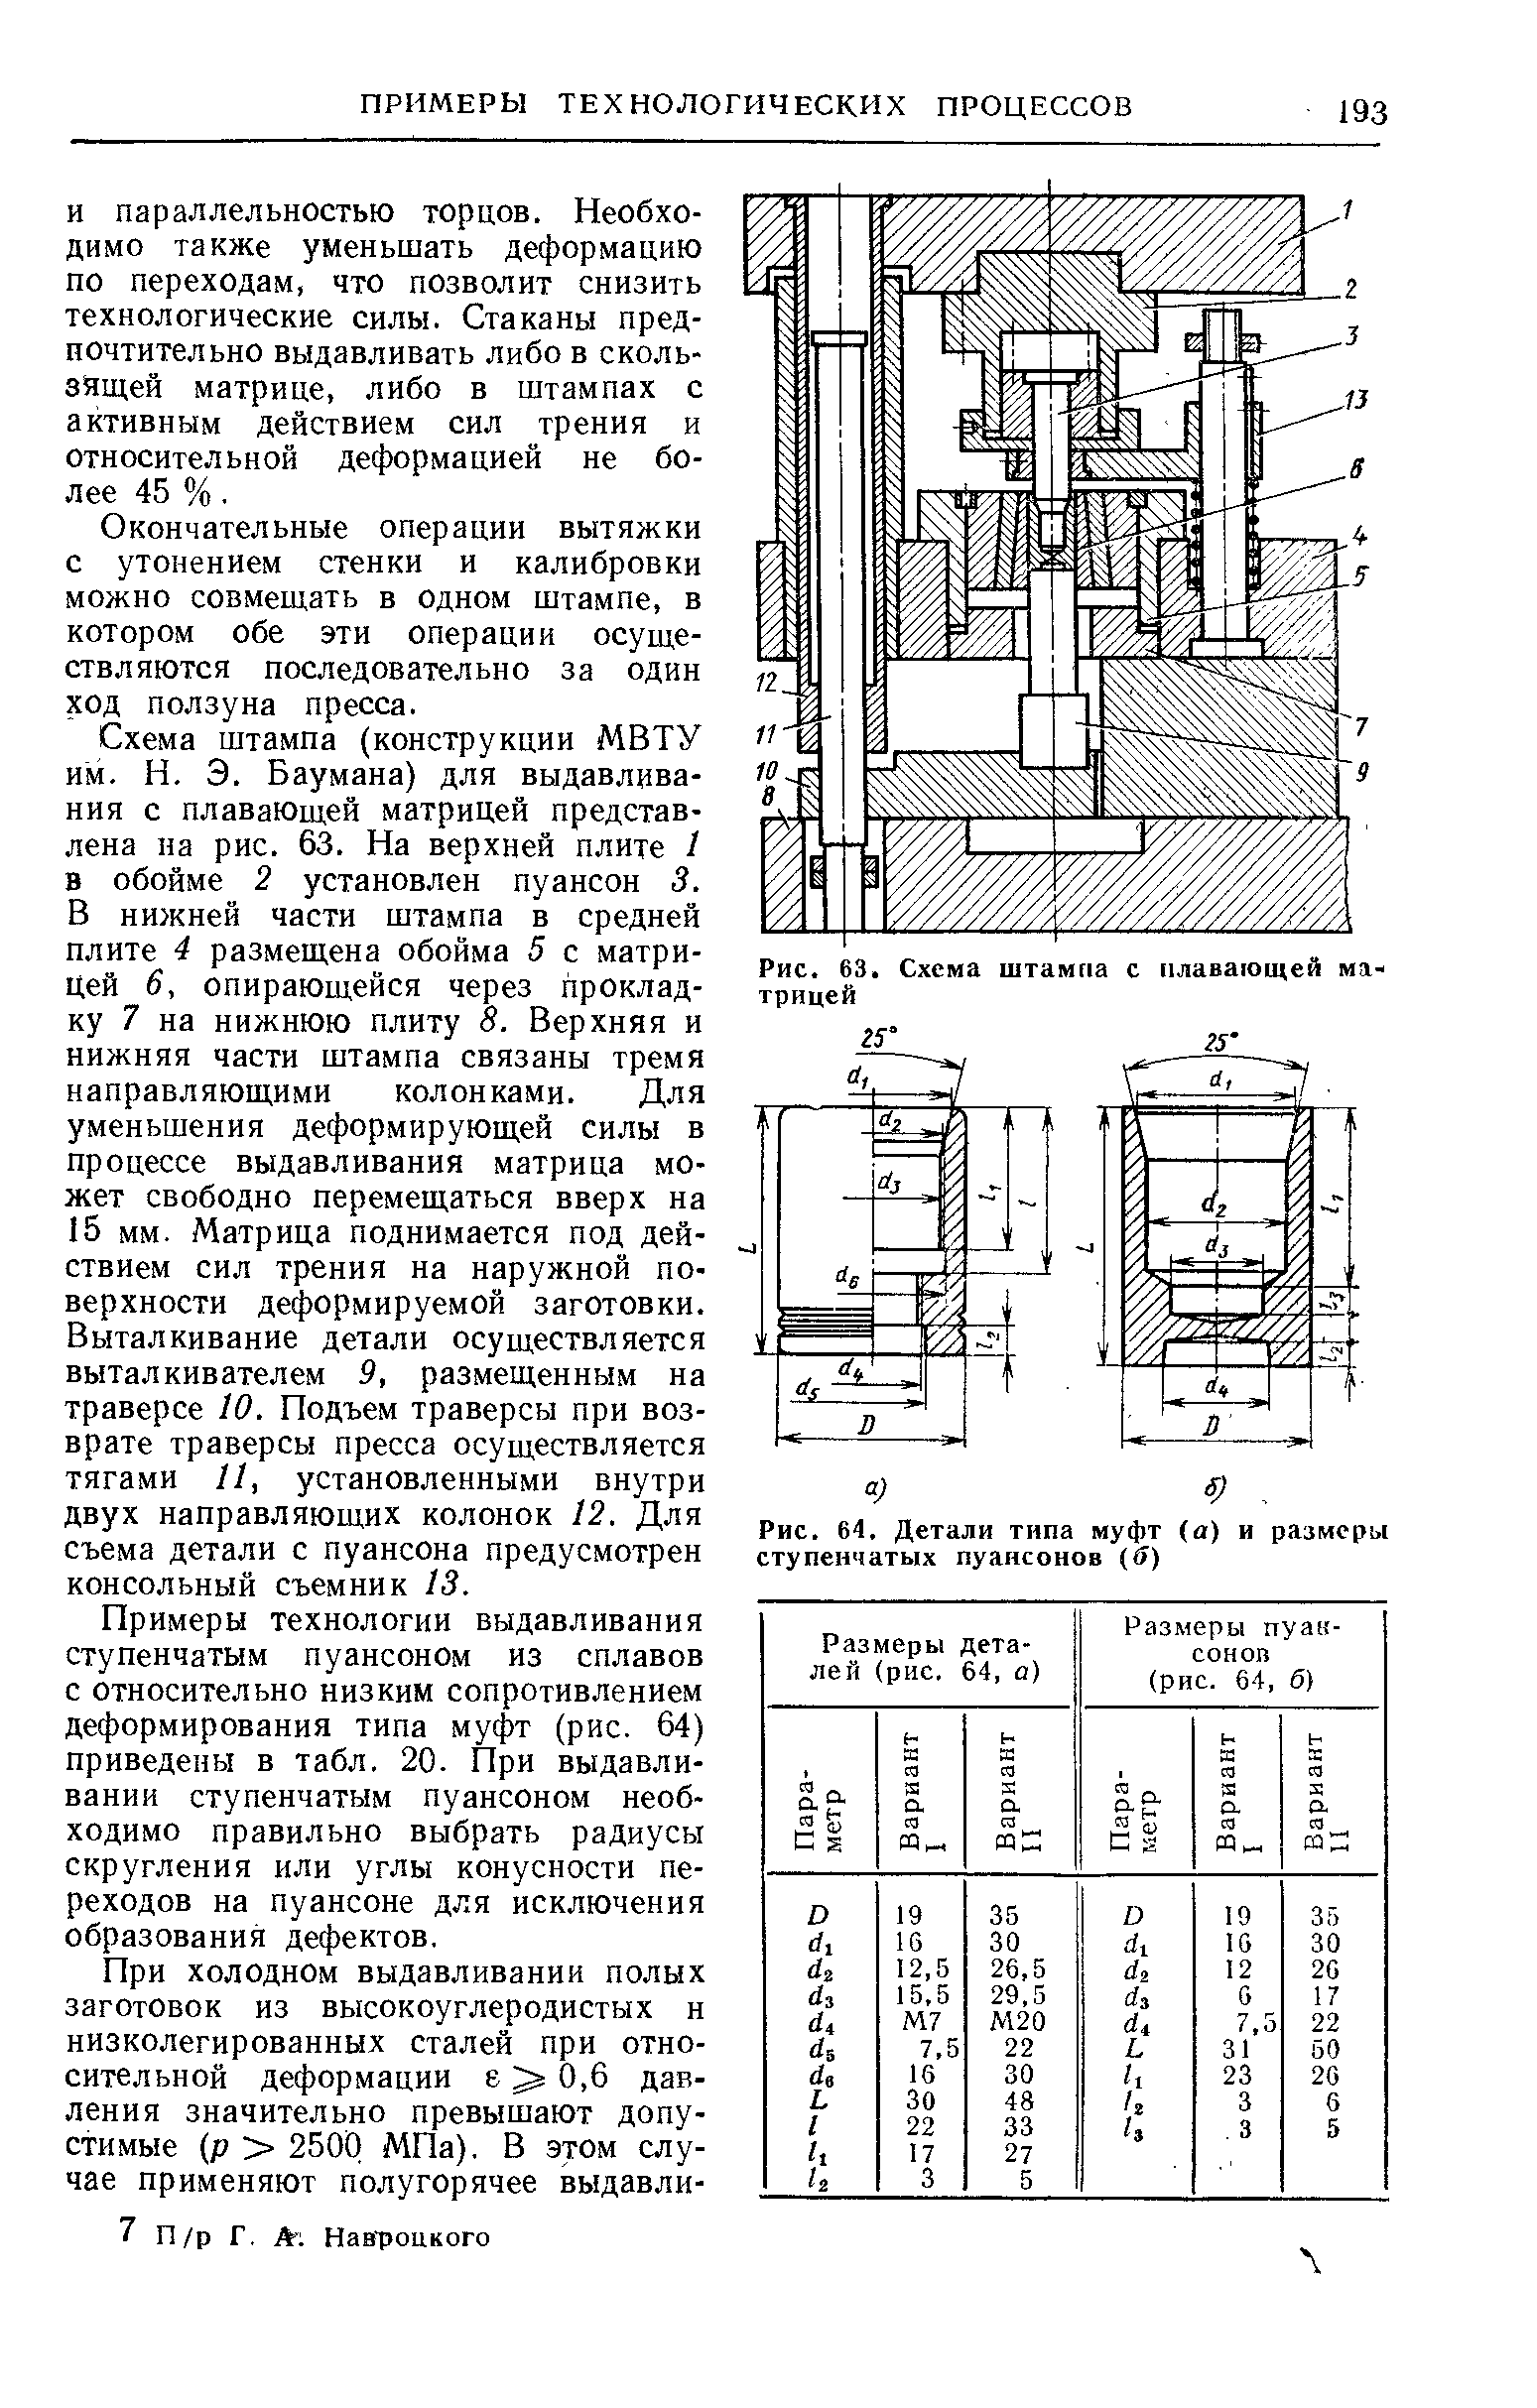 Рис. 64. Детали типа муфт (а) и размера ступенчатых пуансонов б)
